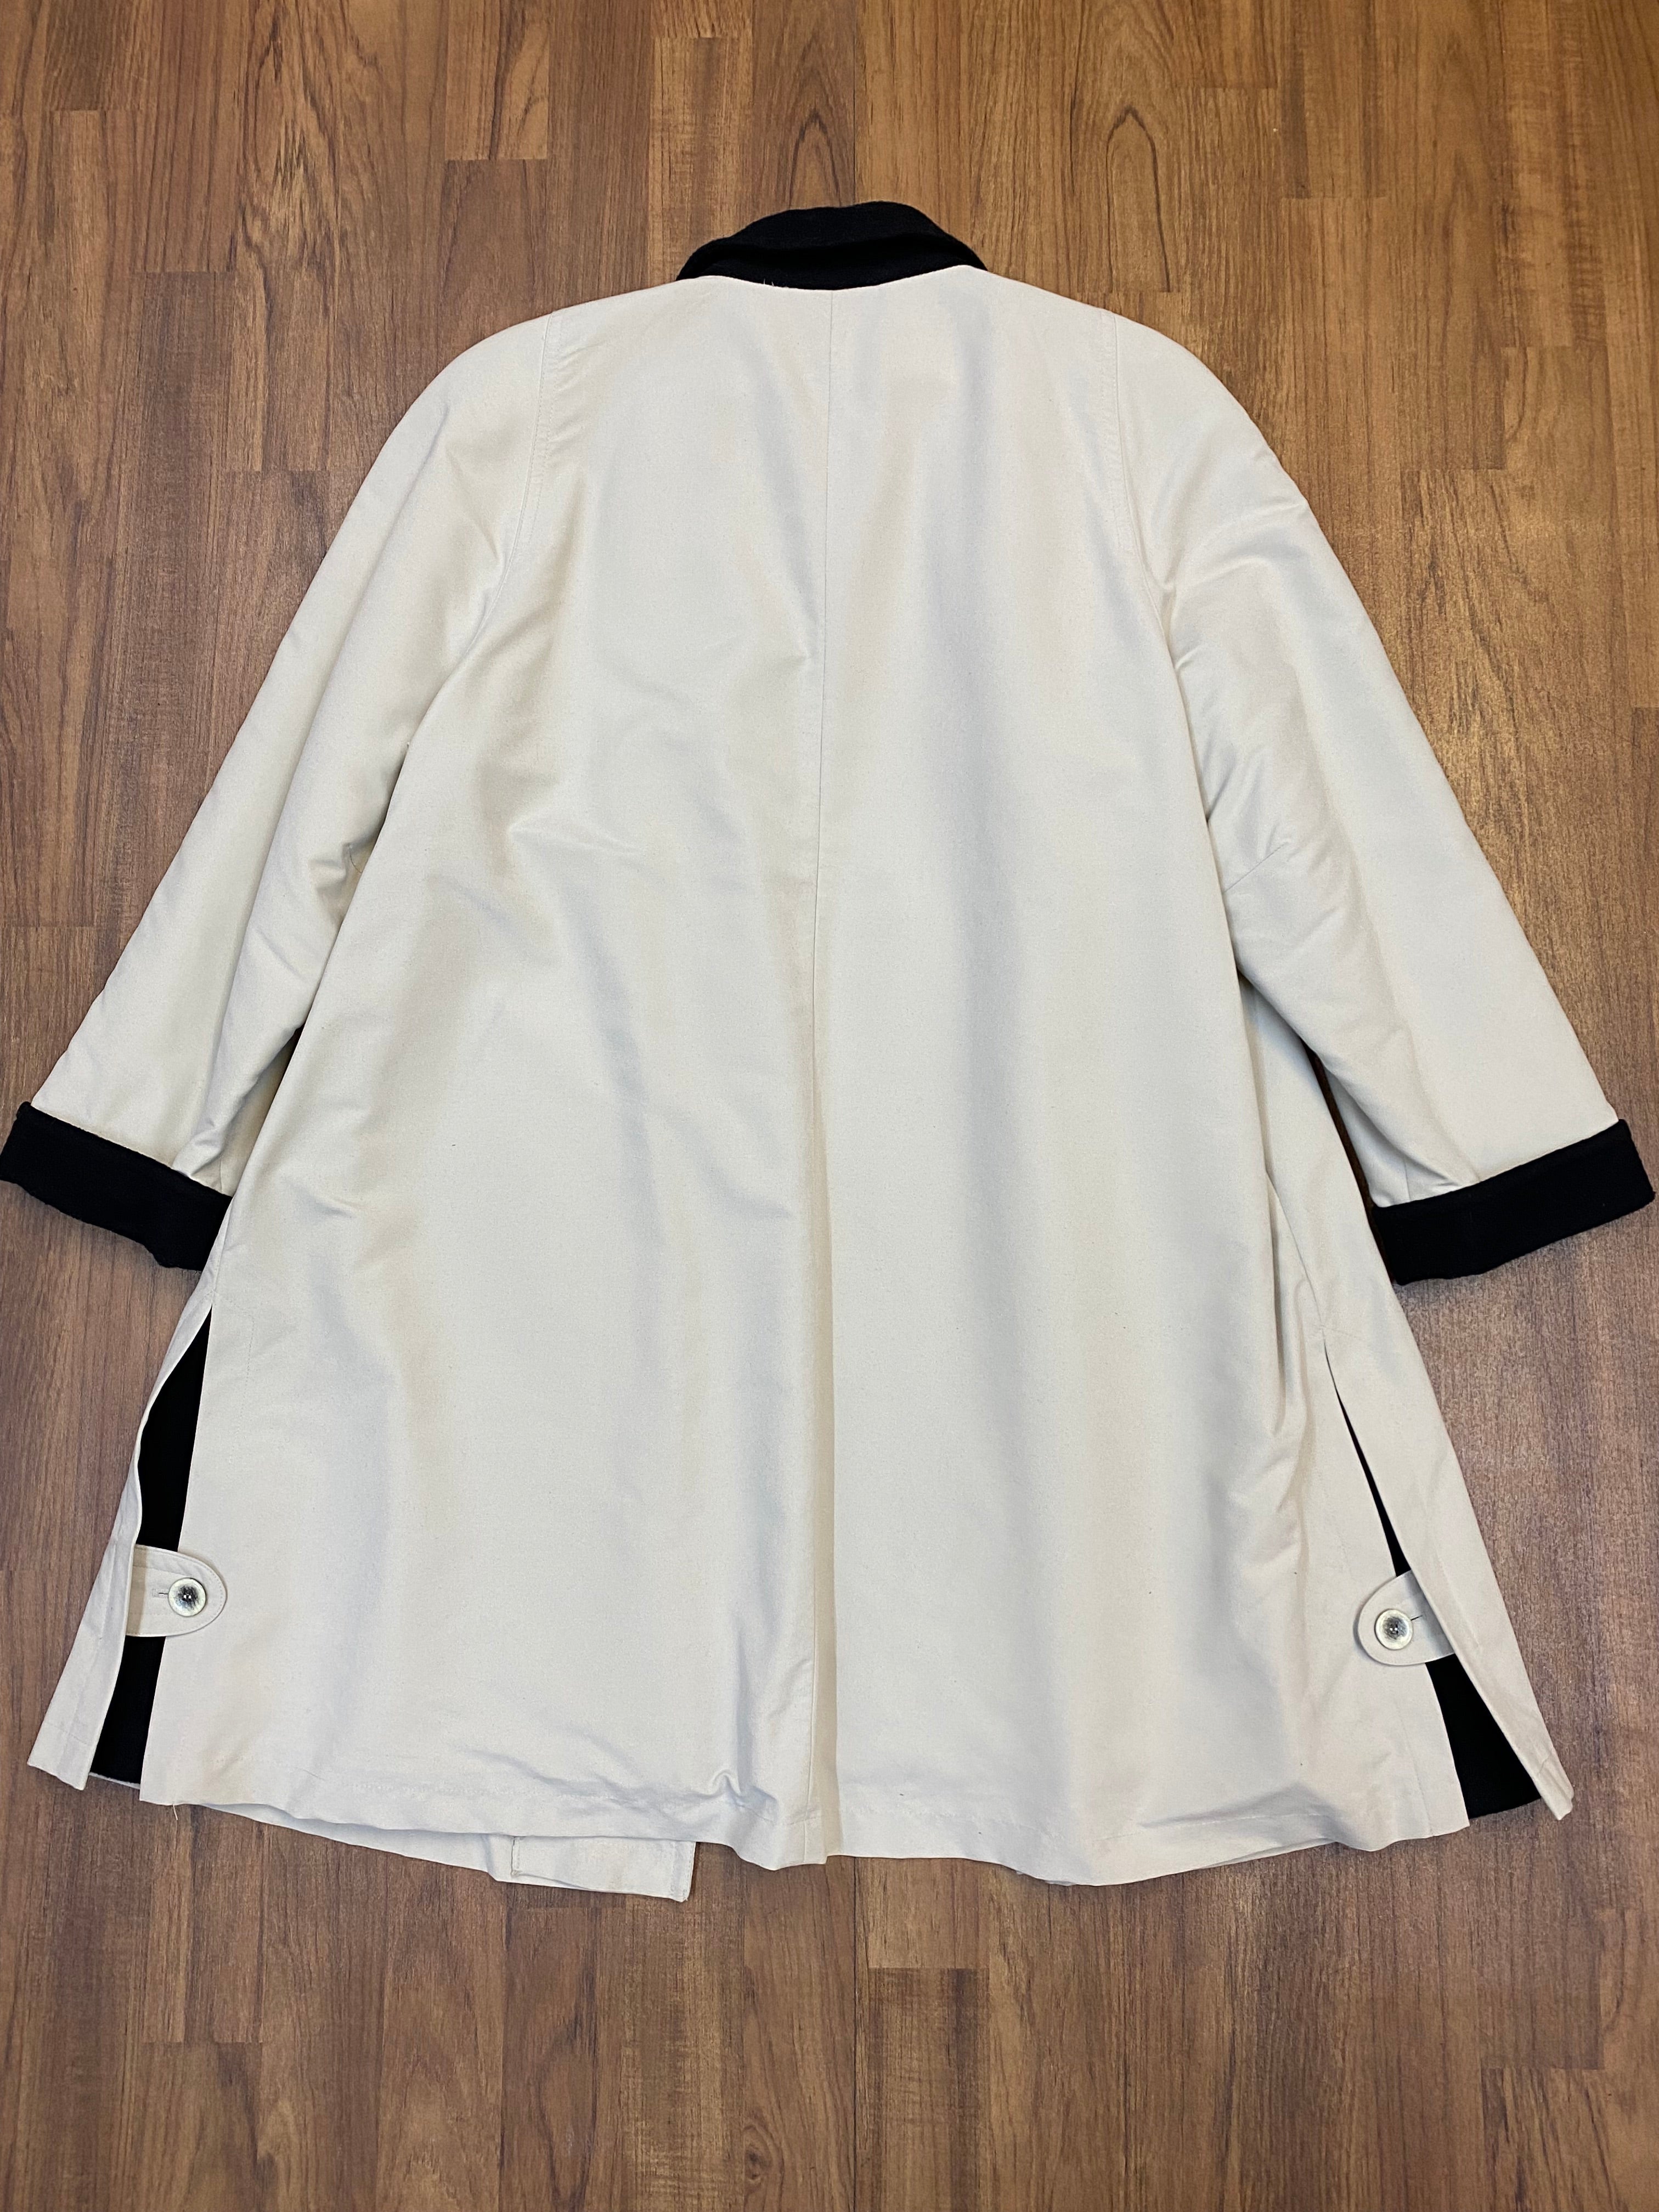 Secondhand Trenchcoat für Damen beige/schwarz ca.Gr.44 Vintage